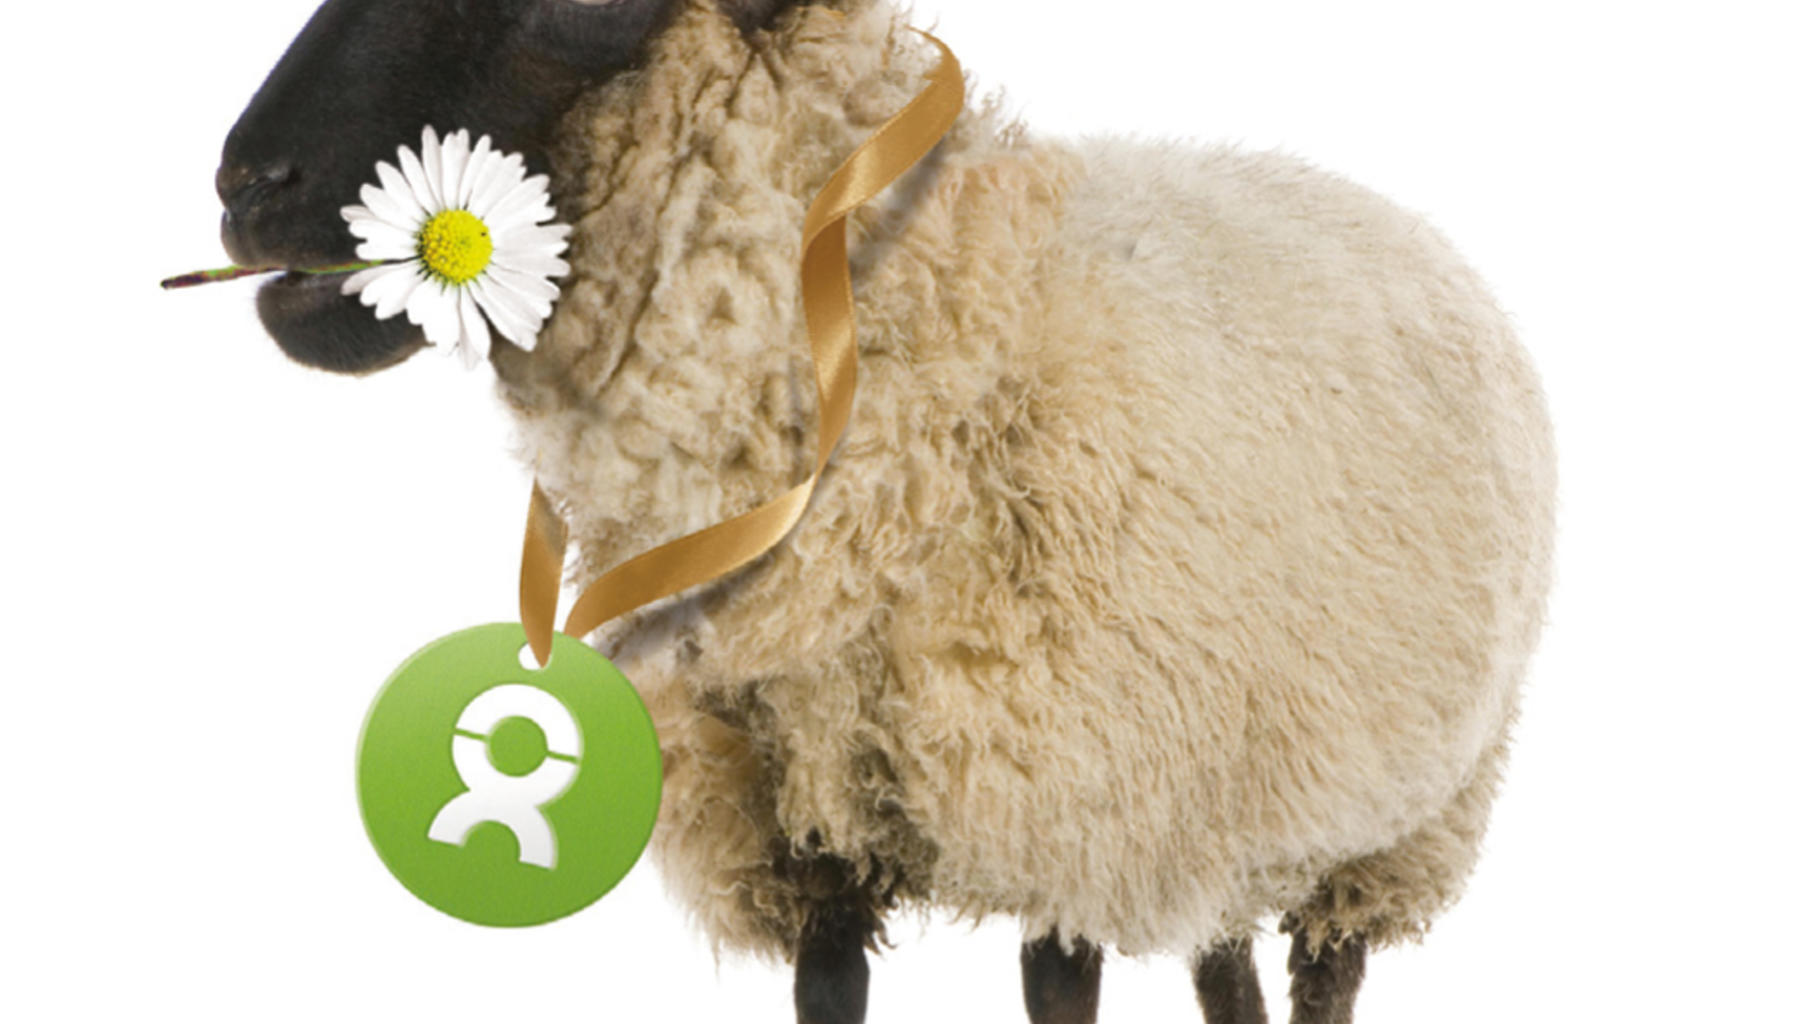 Charity-Geschenke zum Muttertag: ein kuscheliges Schaf